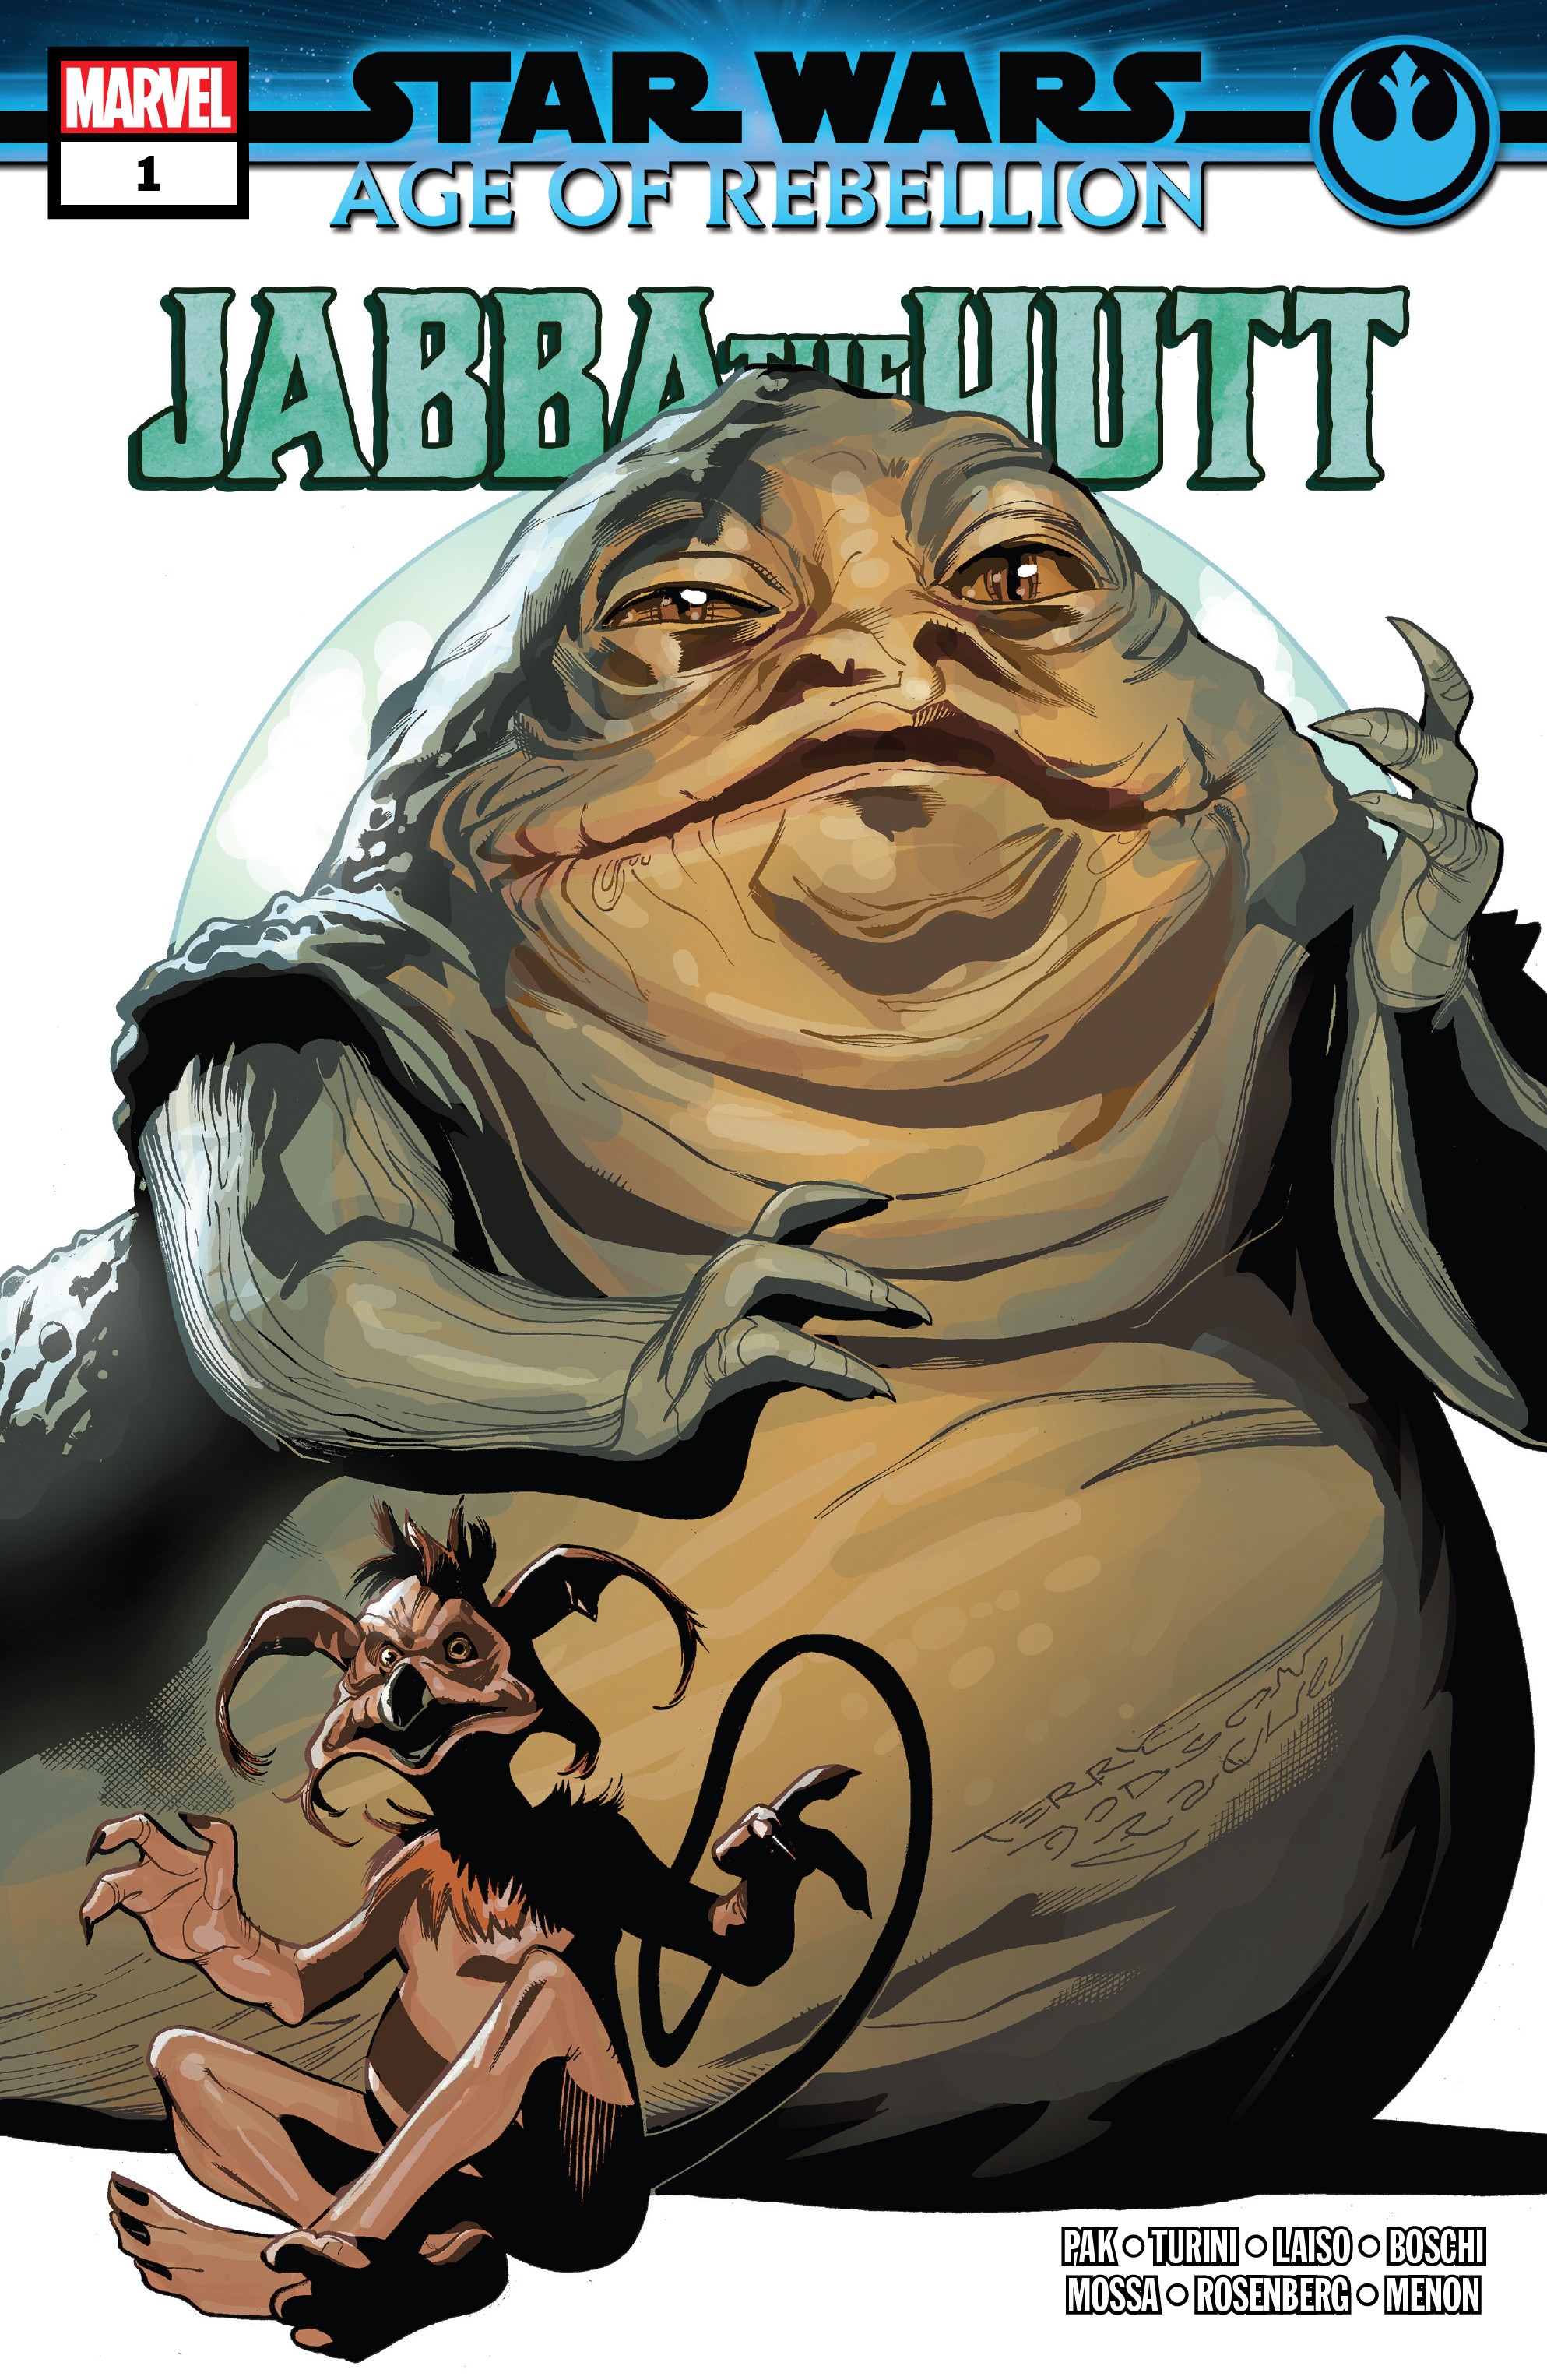 Age of Rebellion - Jabba the Hutt